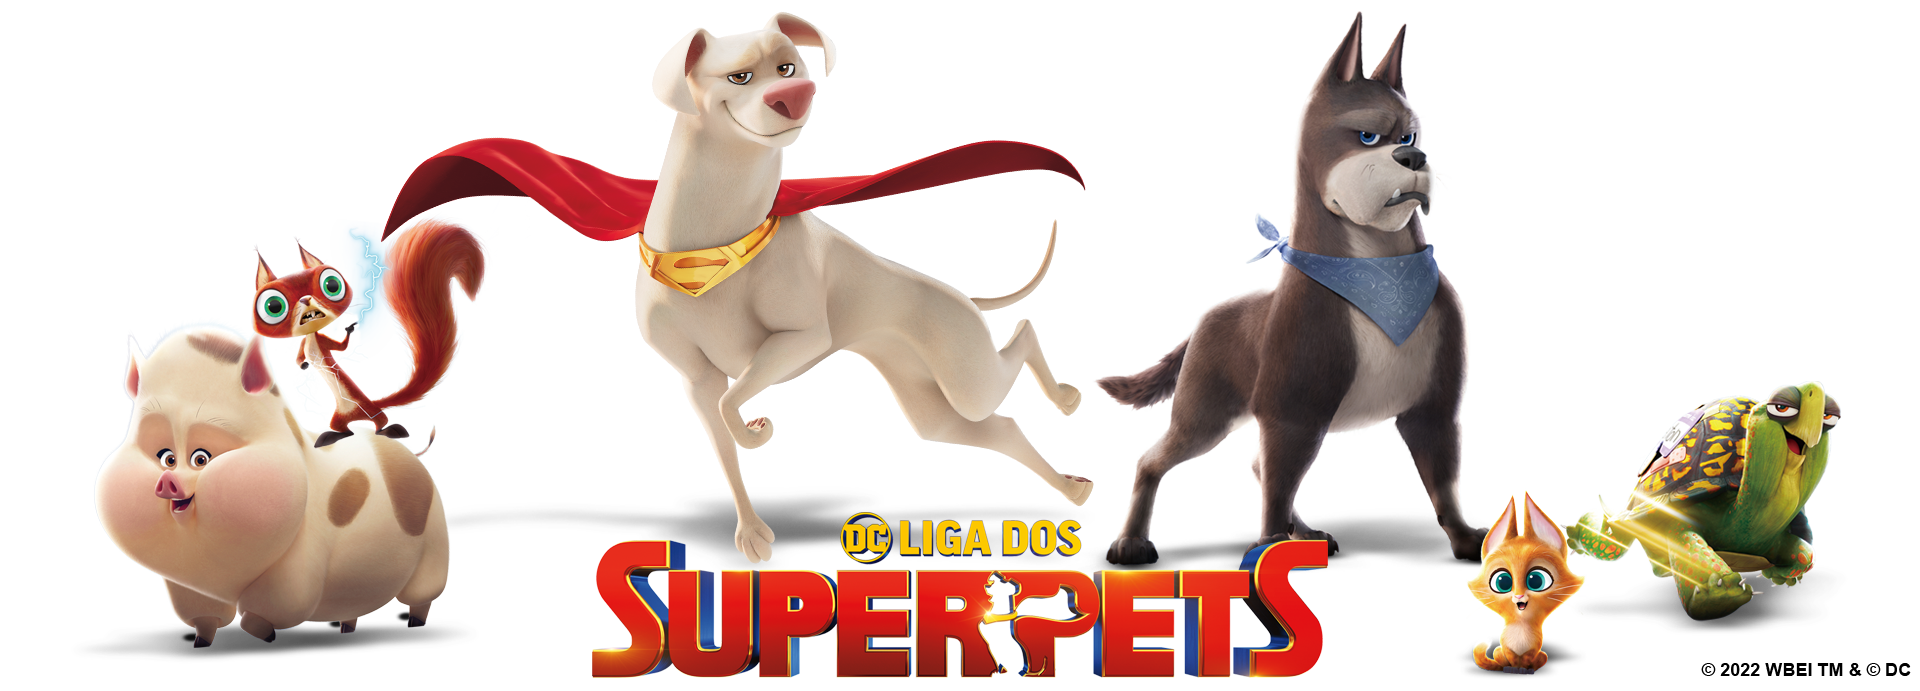 https://cn.i.cdn.ti-platform.com/content/1347/dc-league-of-super-pets/showpage/br/showpano-pets-portuguesev2.6b149bbc.png